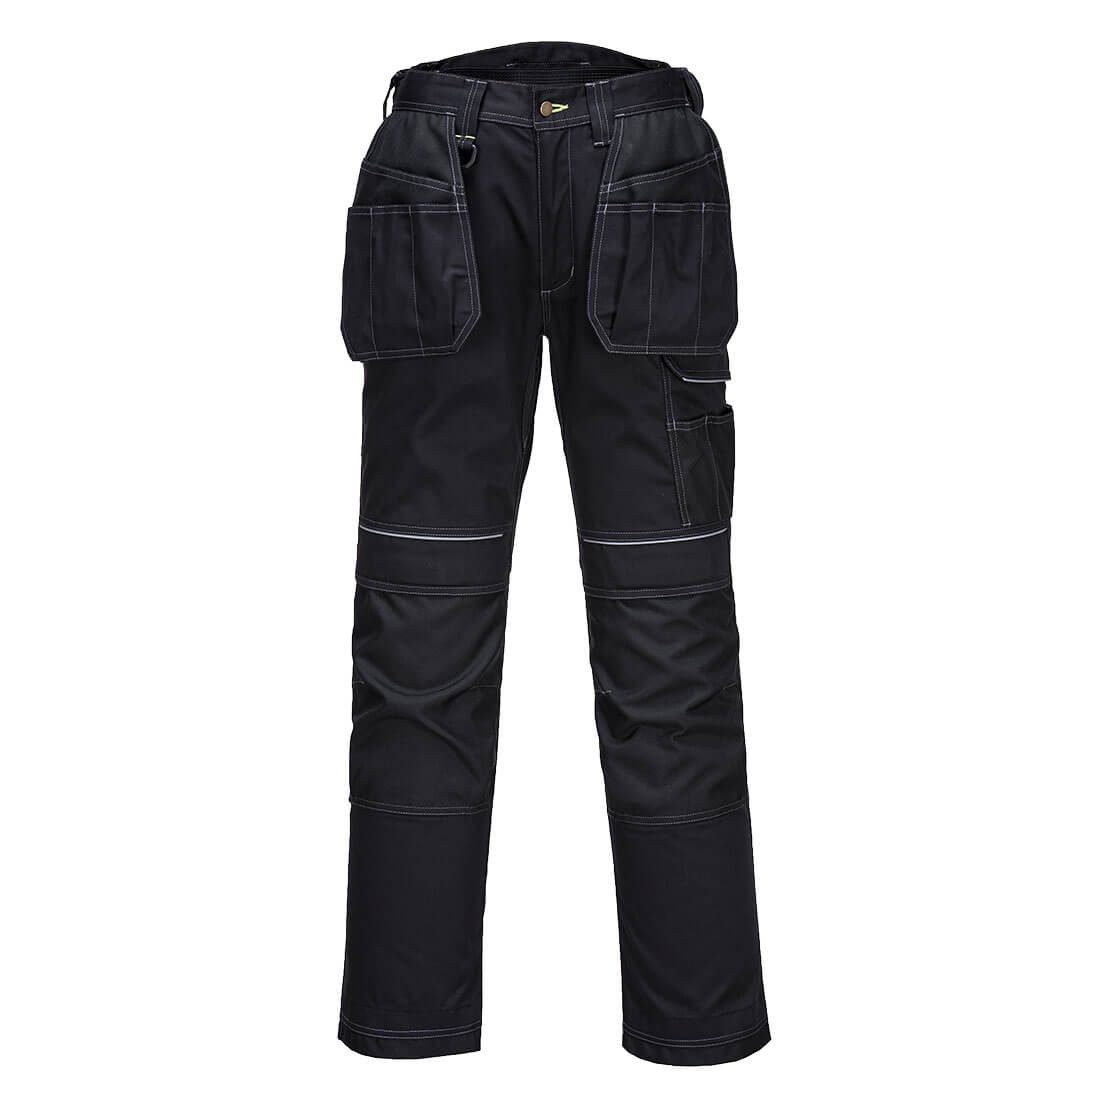 Pantalón elástico de trabajo PW3 con bolsillos de pistolera - Ropa de protección